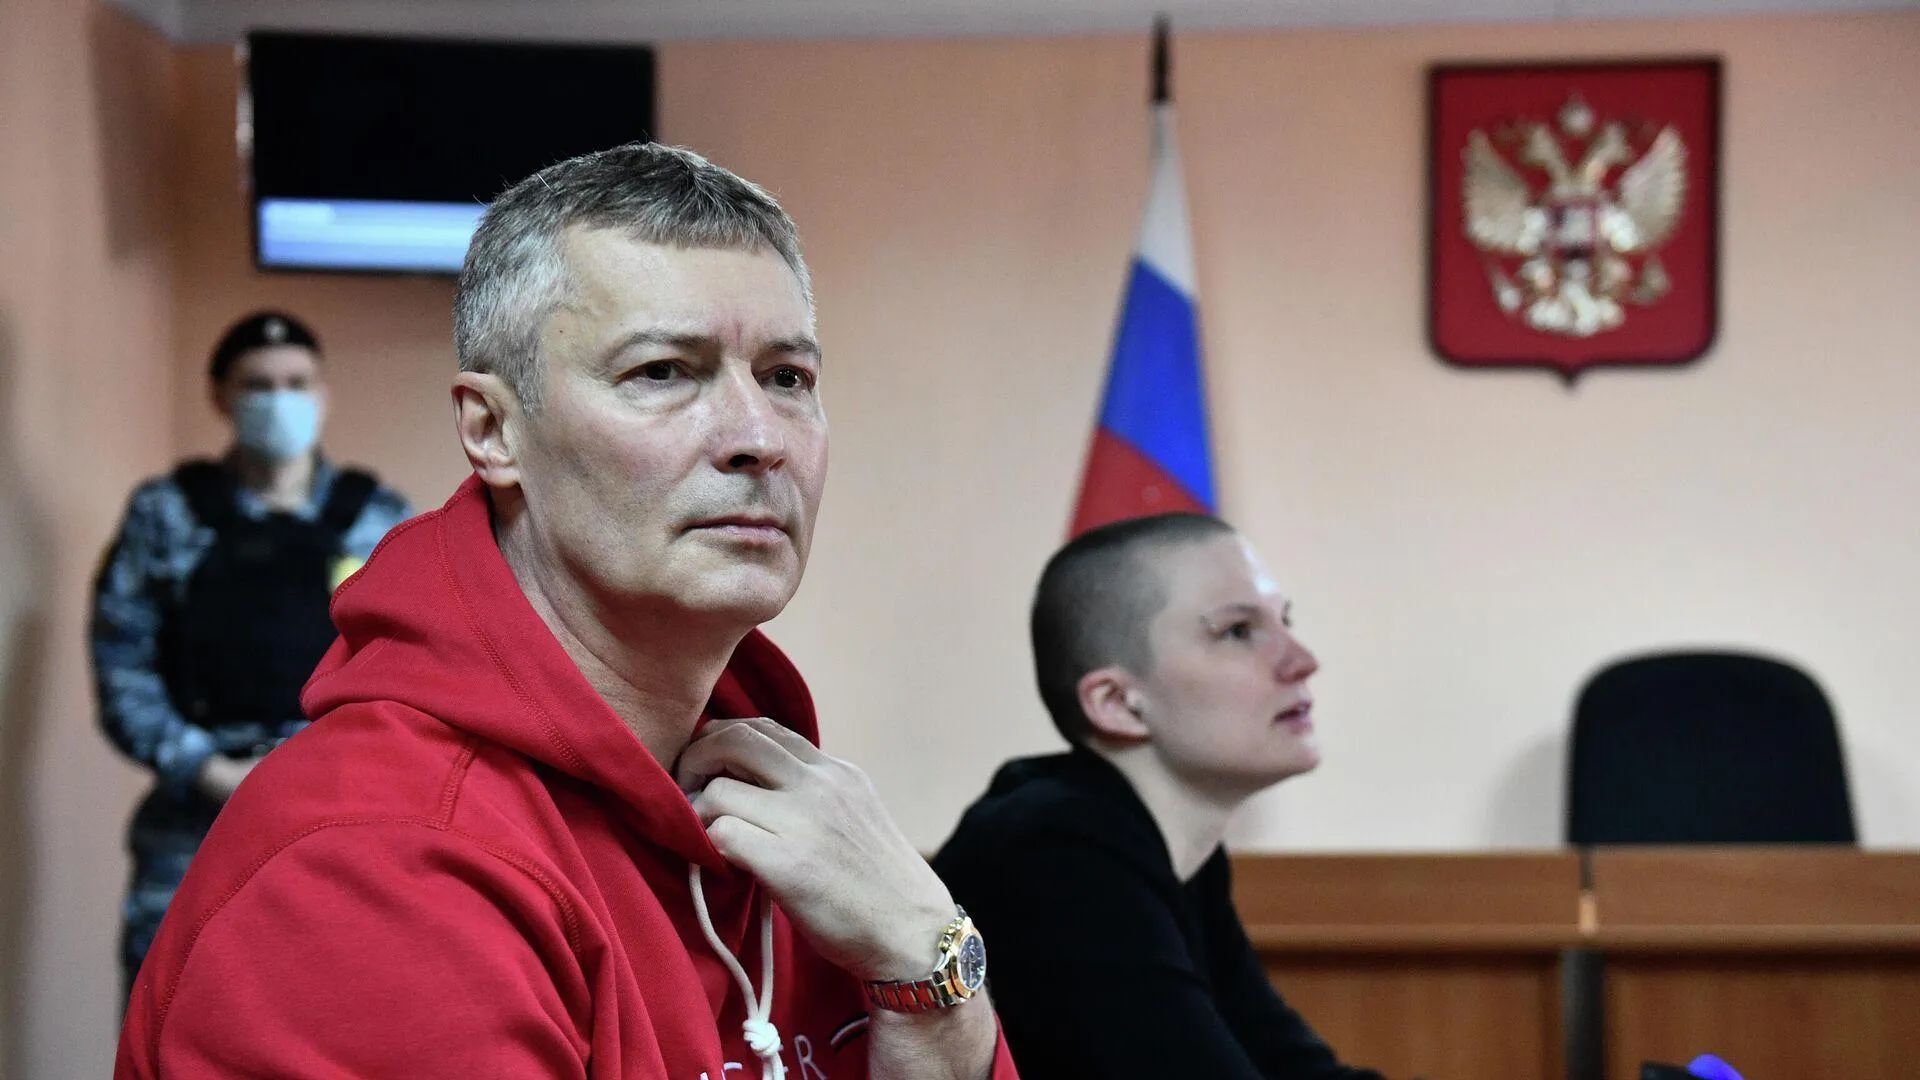 Полиция задержала экс-мэра Екатеринбурга Ройзмана за экстремистскую символику в соцсети